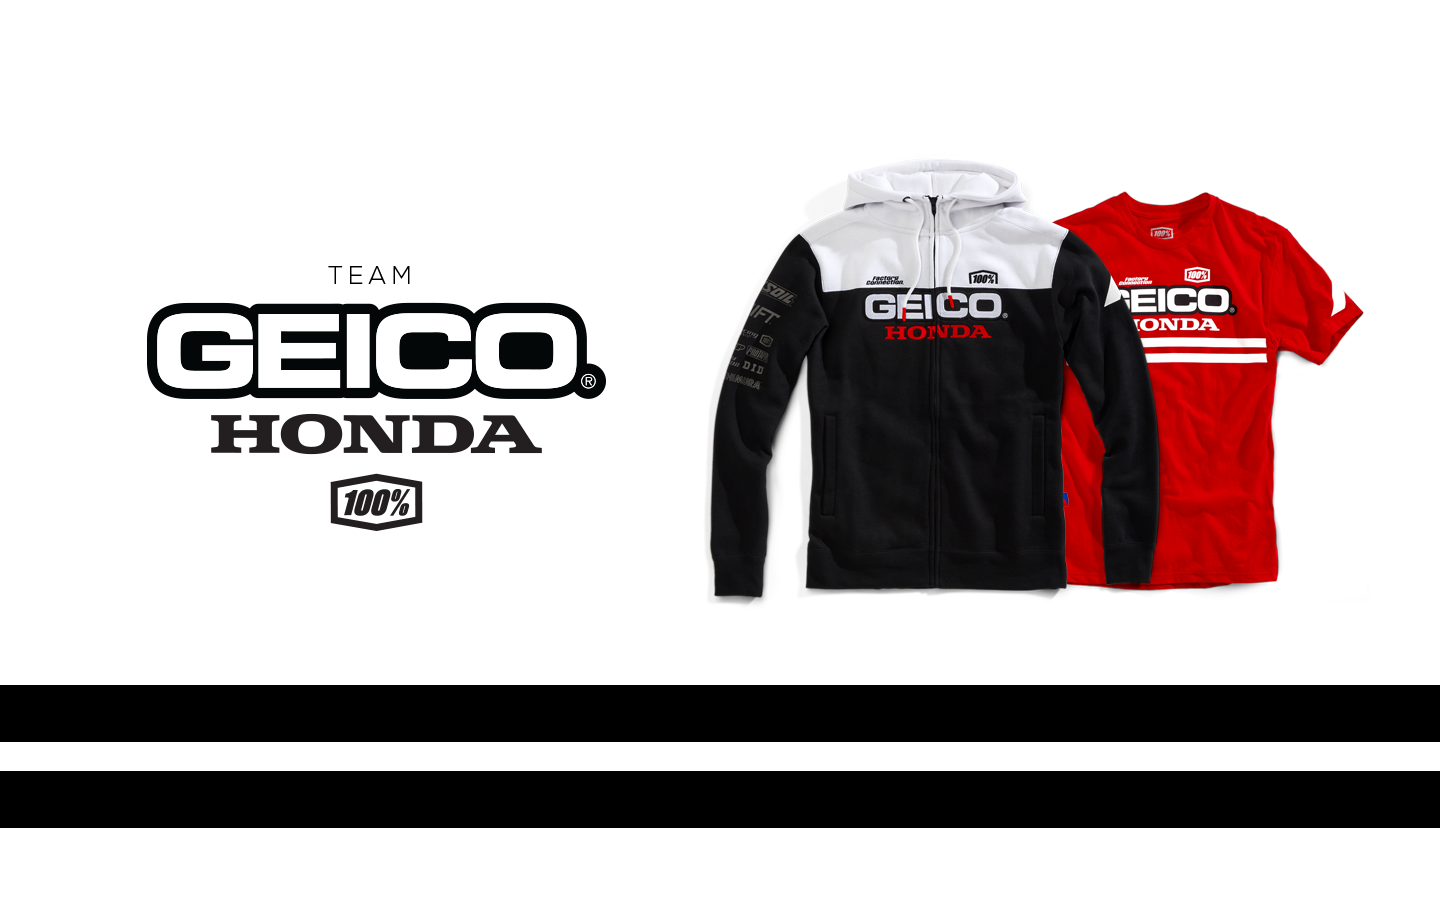 2019 Geico Honda Collection - 100% Europe